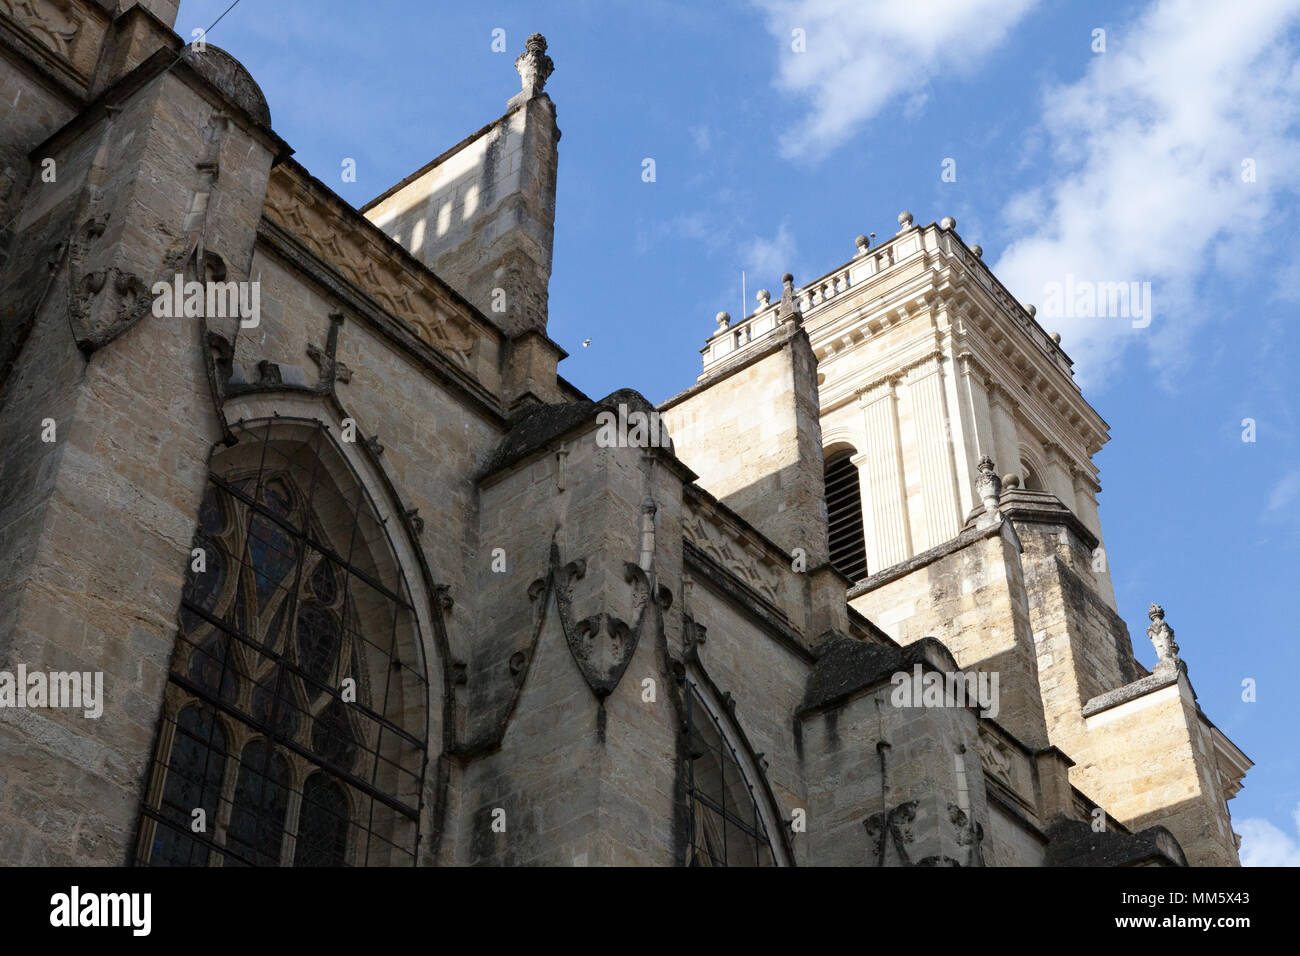 À l'extérieur et vue de côté de l'archidiocèse d'Auch, Gers, France. Également nommée Cathédrale de Sainte-Marie Banque D'Images